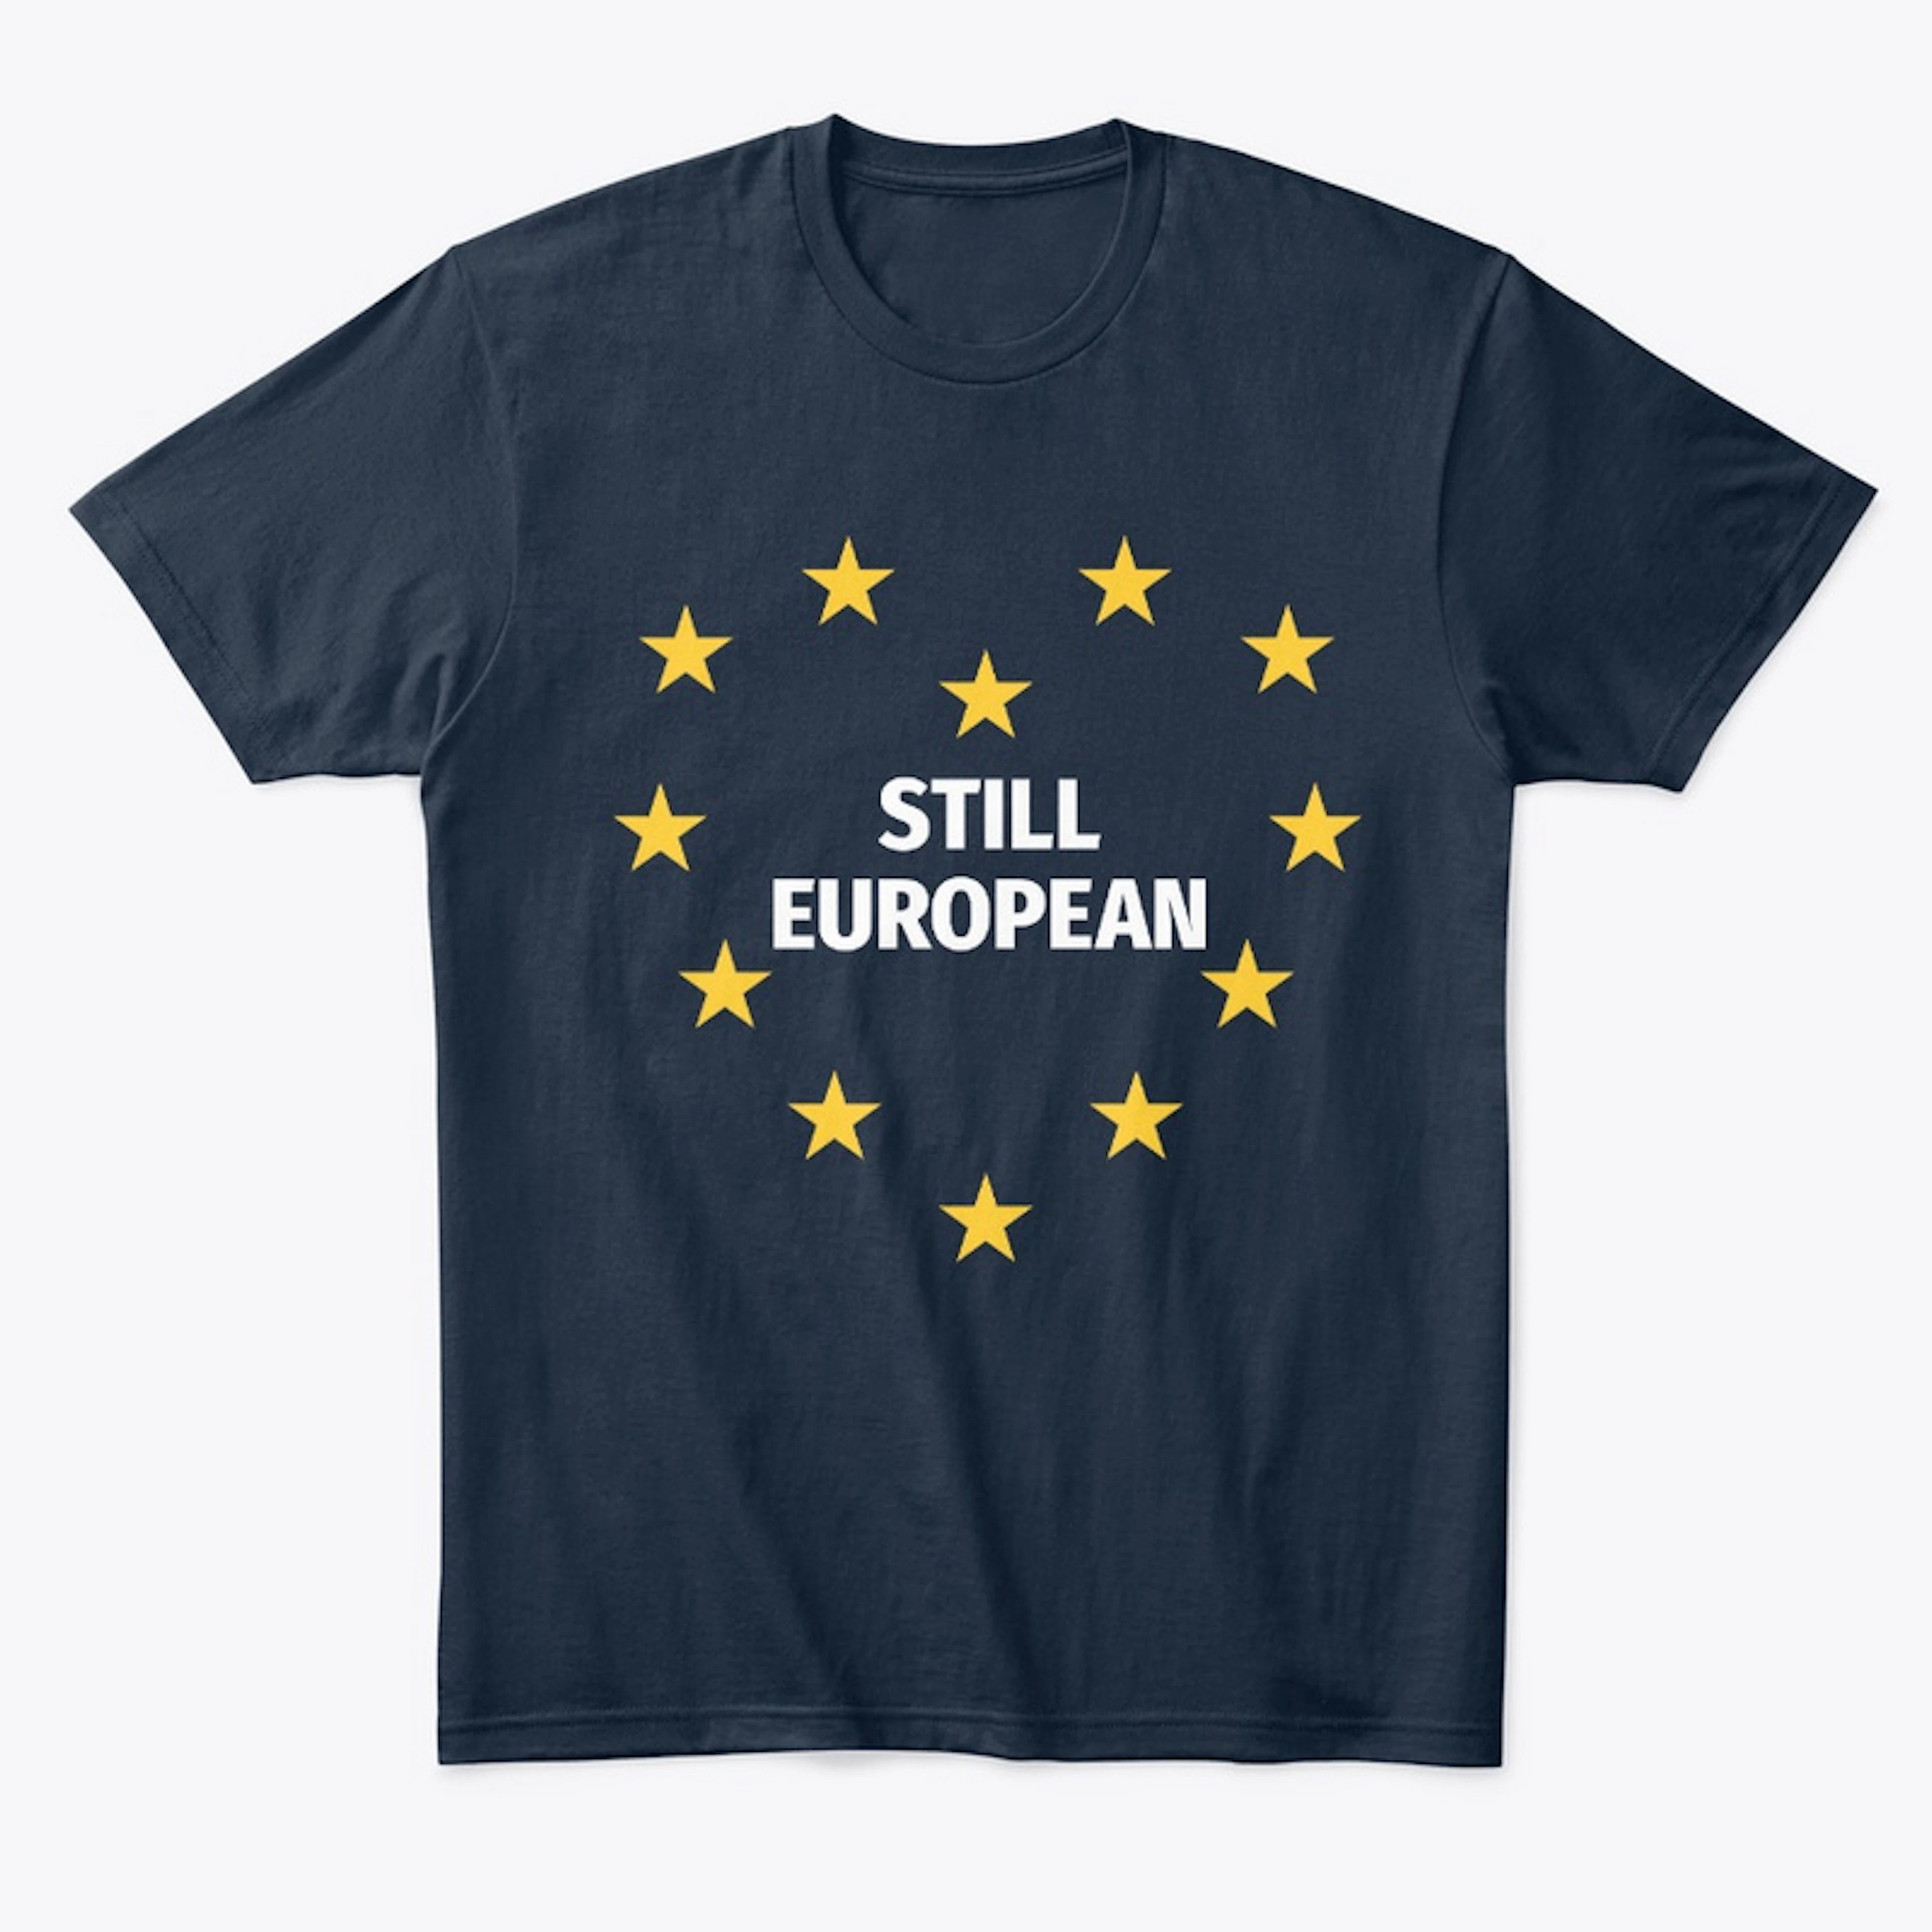 Still European pro-Remain pro-Europe